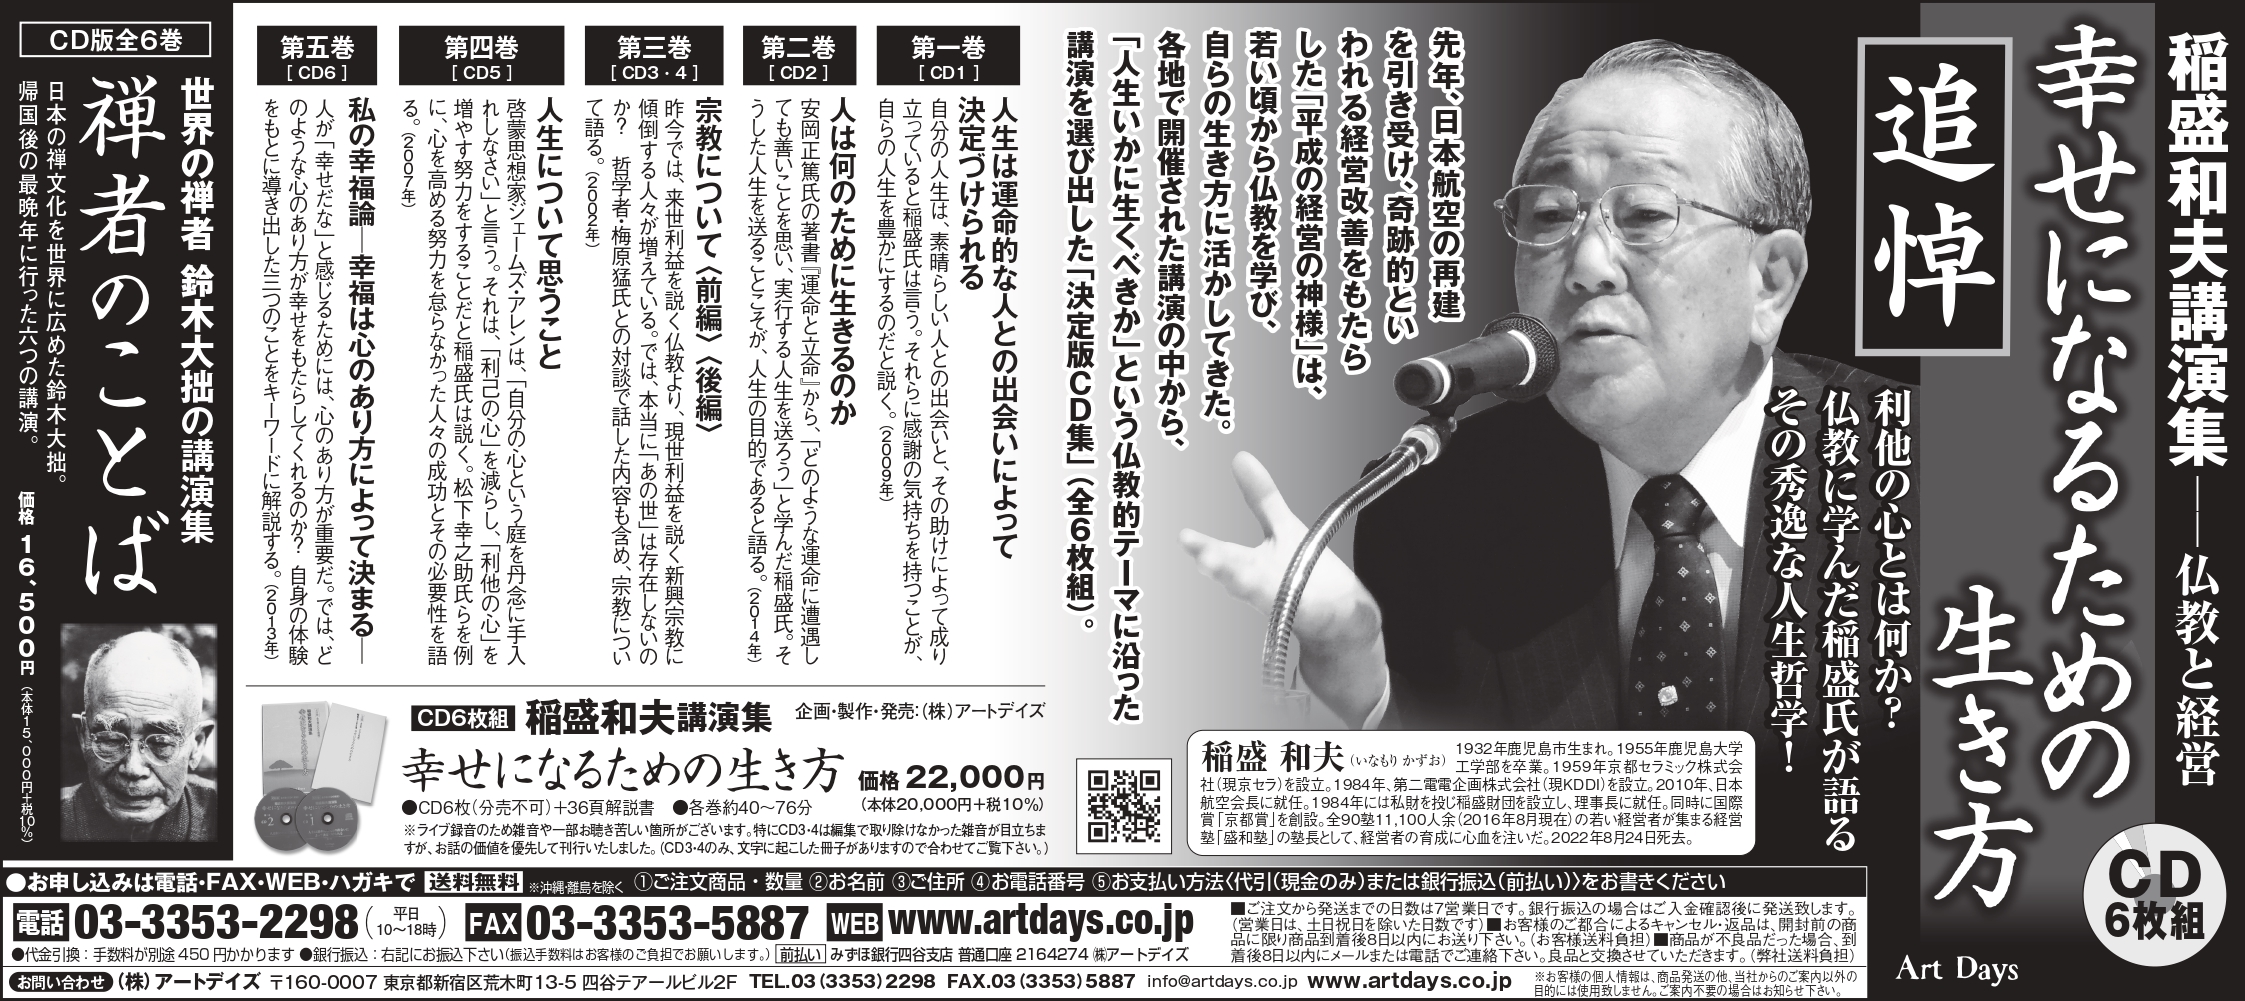 7月5日稲盛和夫講演集「幸せになるための生き方」の広告を日経新聞朝刊に掲載しました。